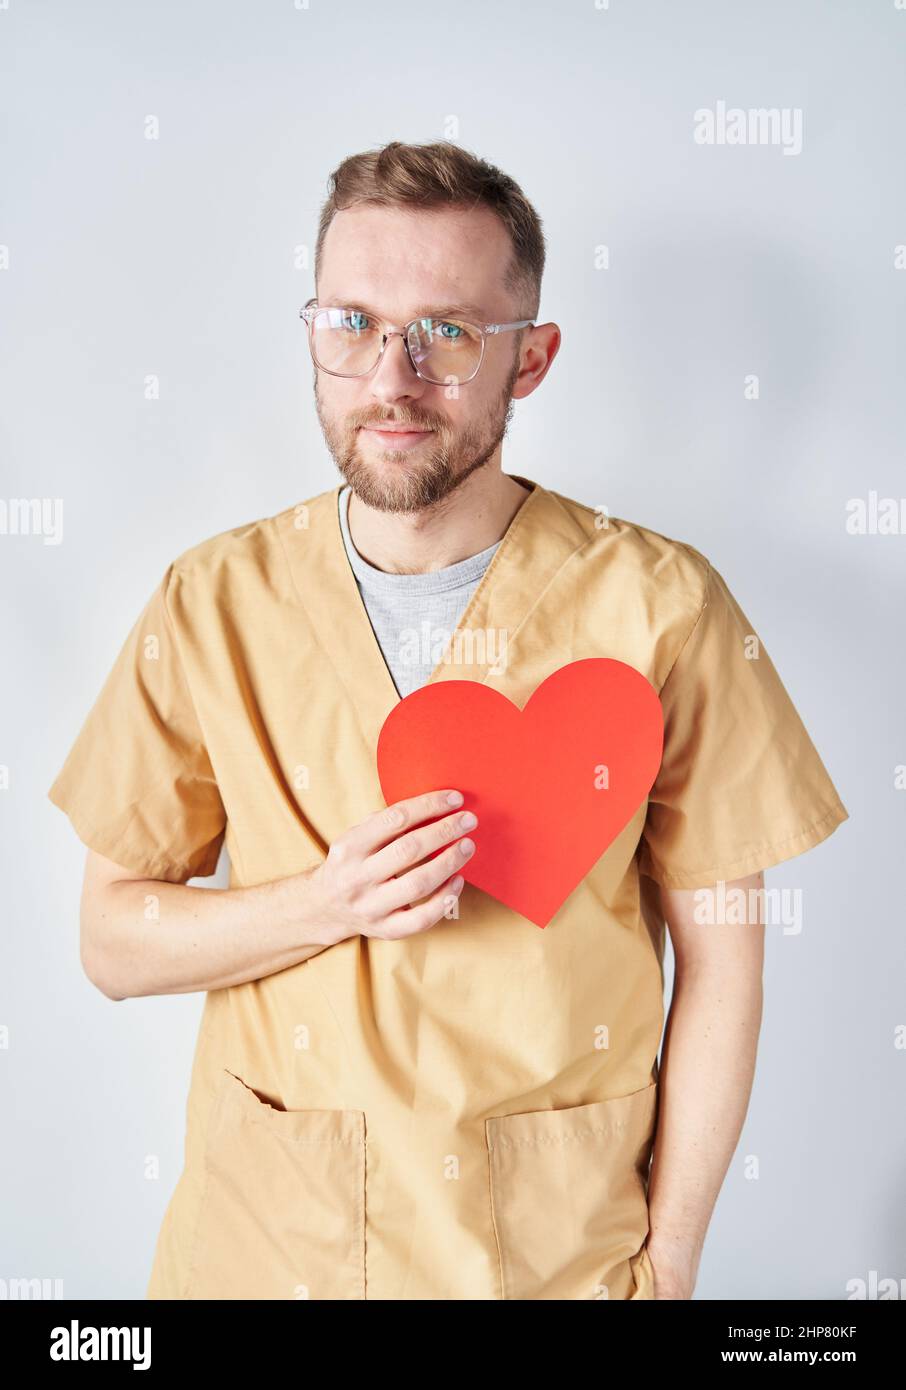 Medico cardiologo maschile caucasico in uniforme medica e occhiali con forma di cuore di carta rossa. Medico chirurgo adulto che posa in ospedale. Concetto di Giornata Nazionale dei Medici. Immagine di alta qualità Foto Stock